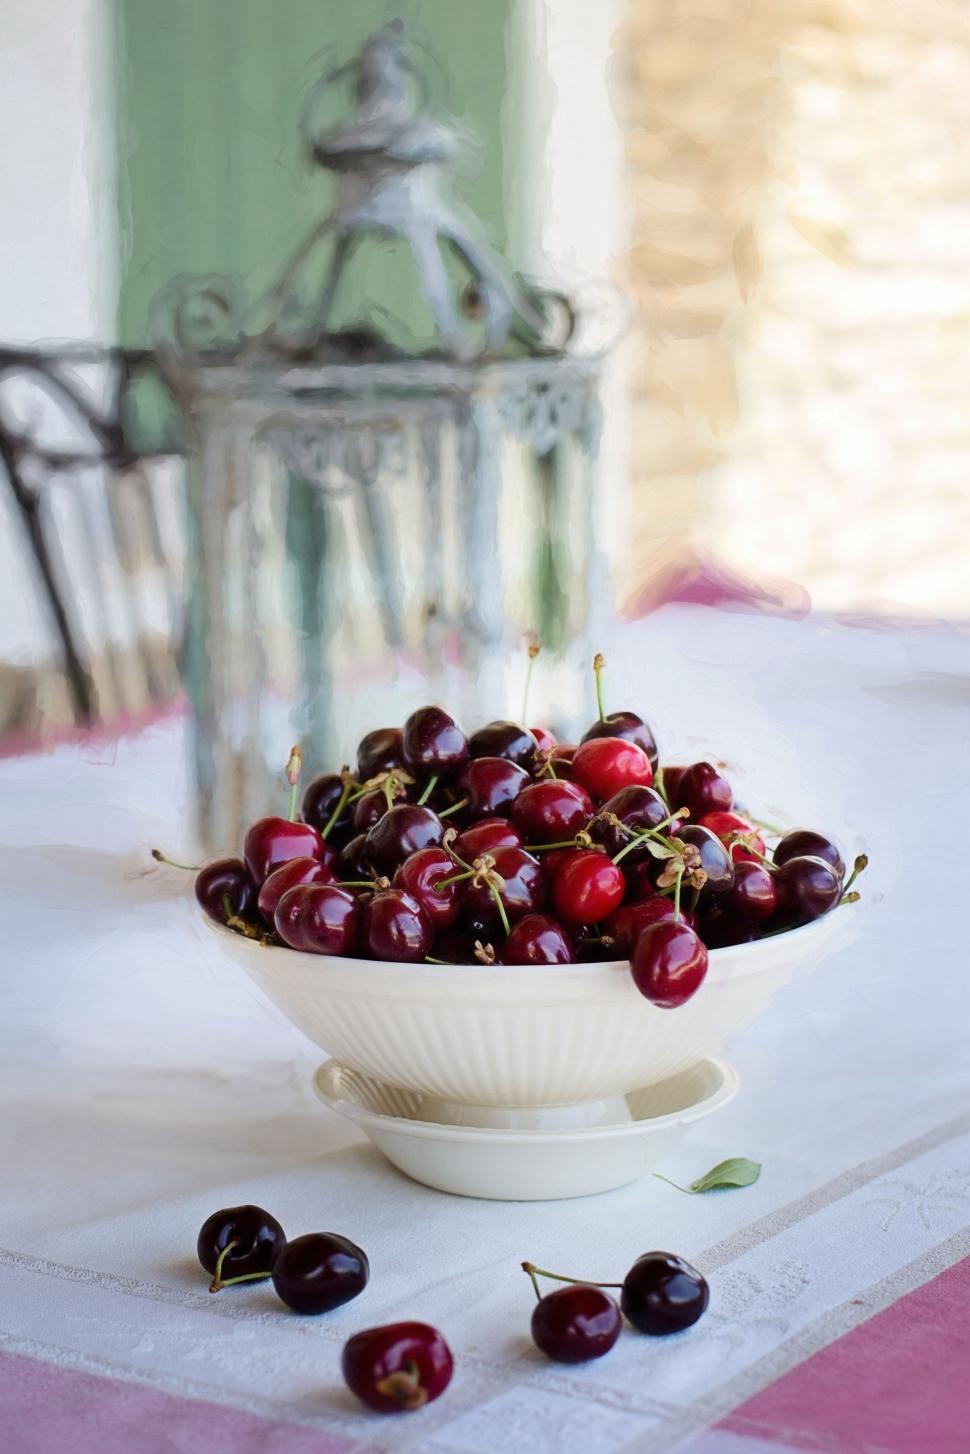 Free Image of Fresh Red Cherries  